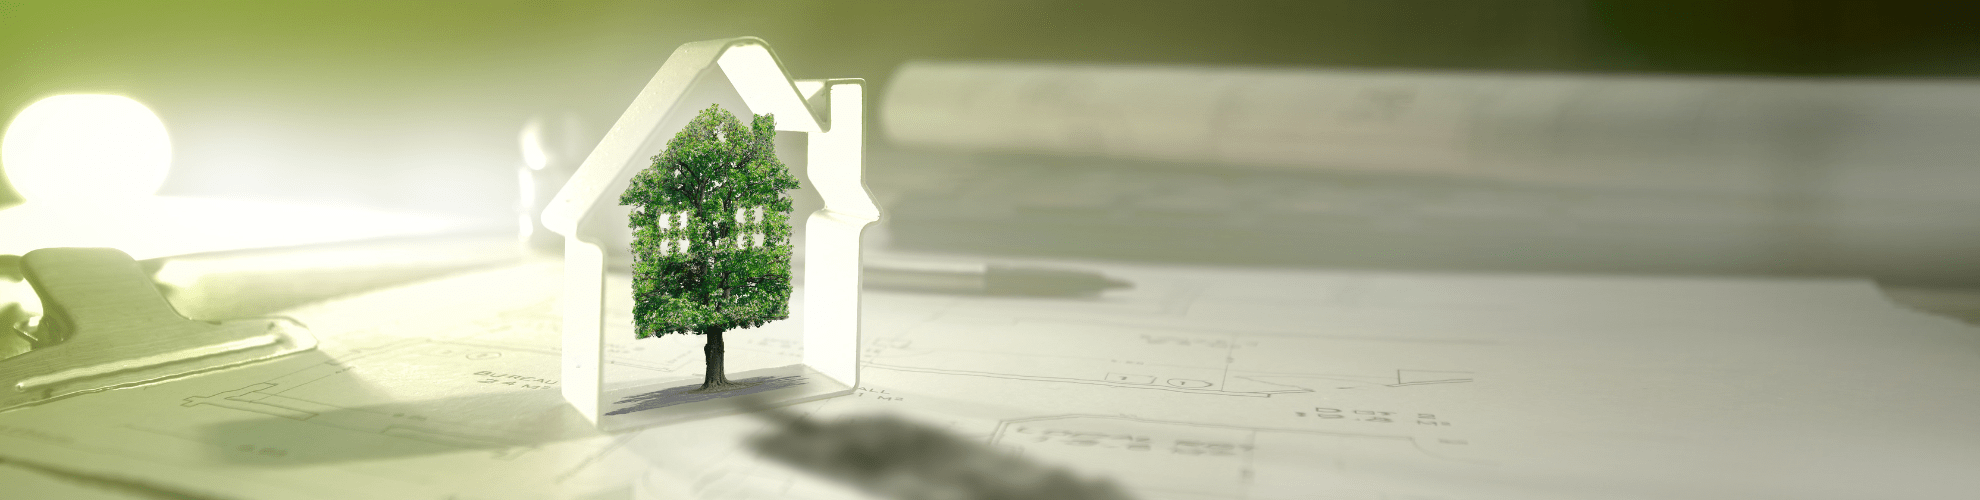 Riqualificazione immobiliare e case green